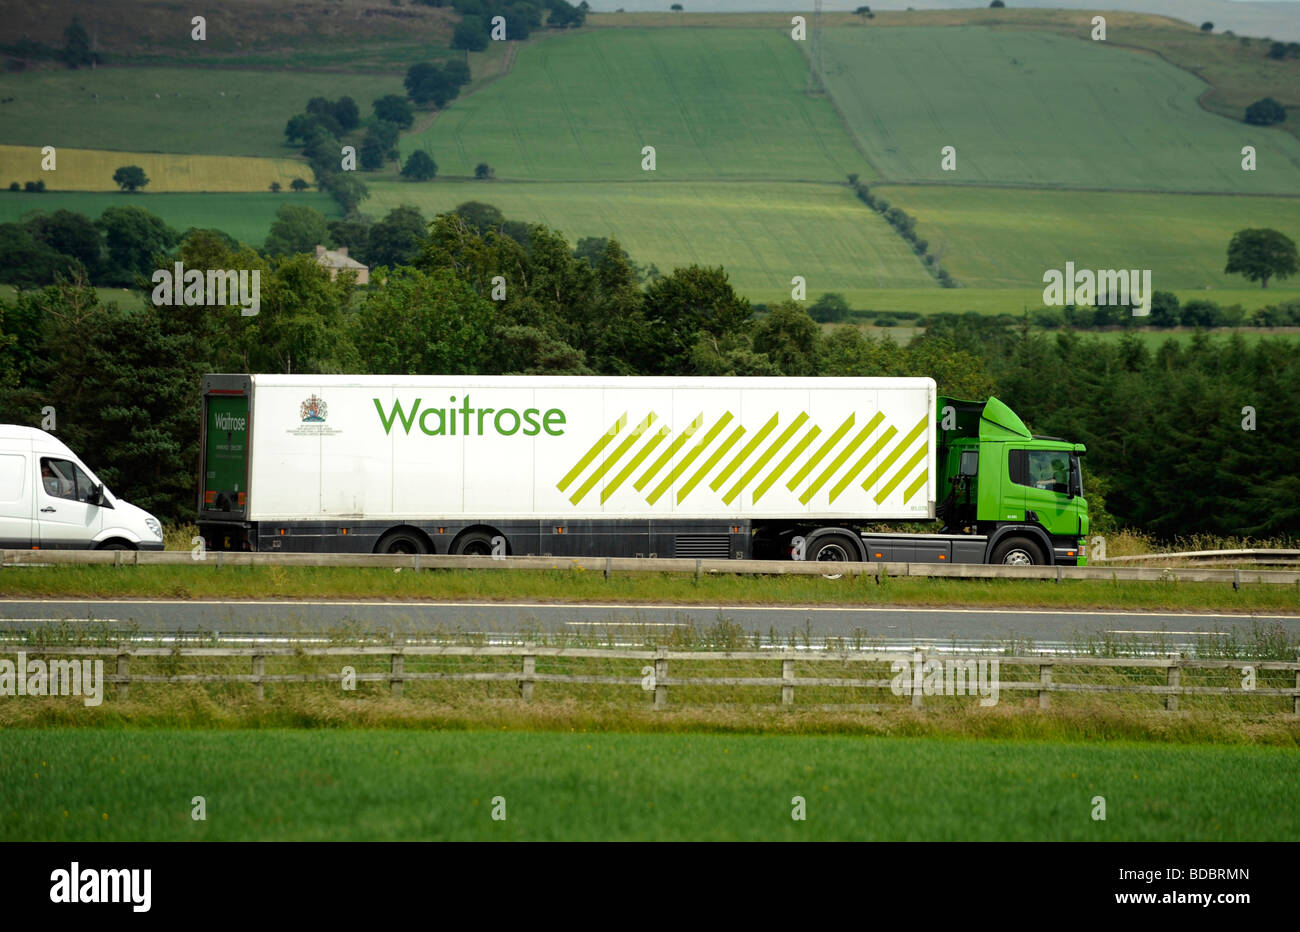 Scania camion avec remorque frigorifique réfrigérés supermarché Waitrose John Lewis Group Banque D'Images